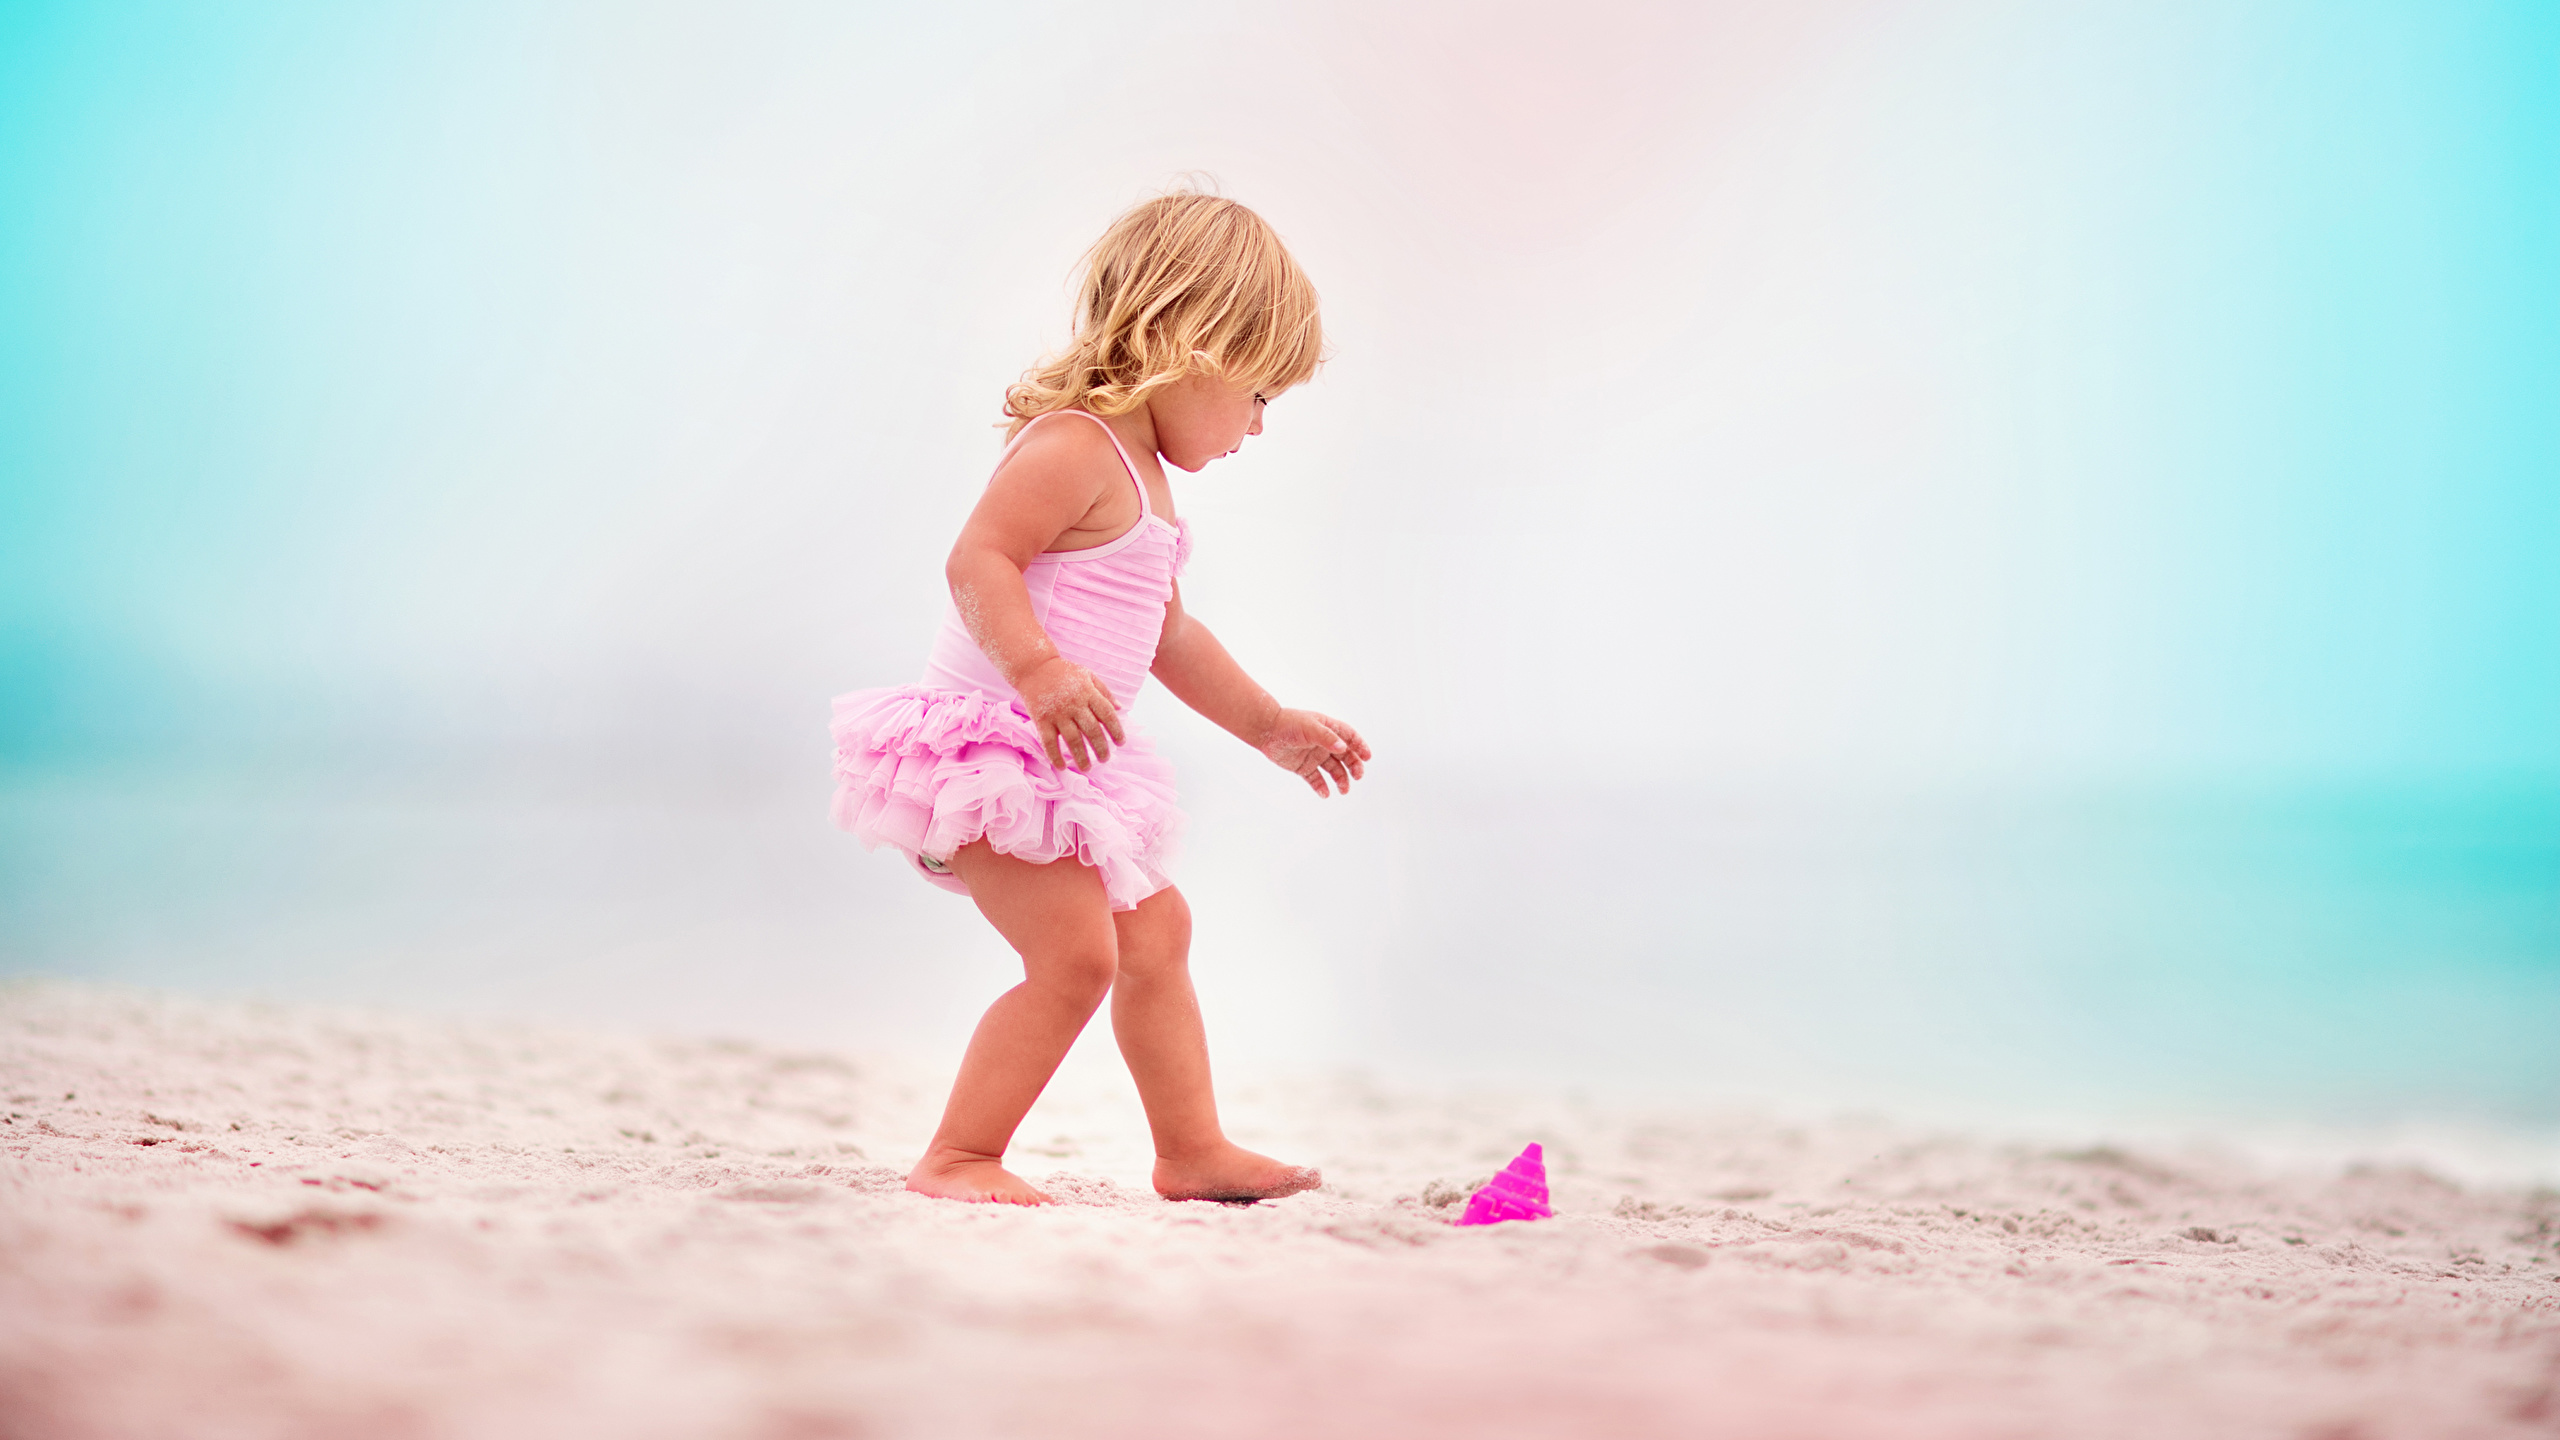 Desktop Wallpapers Little girls beaches Children Sand 2560x1440